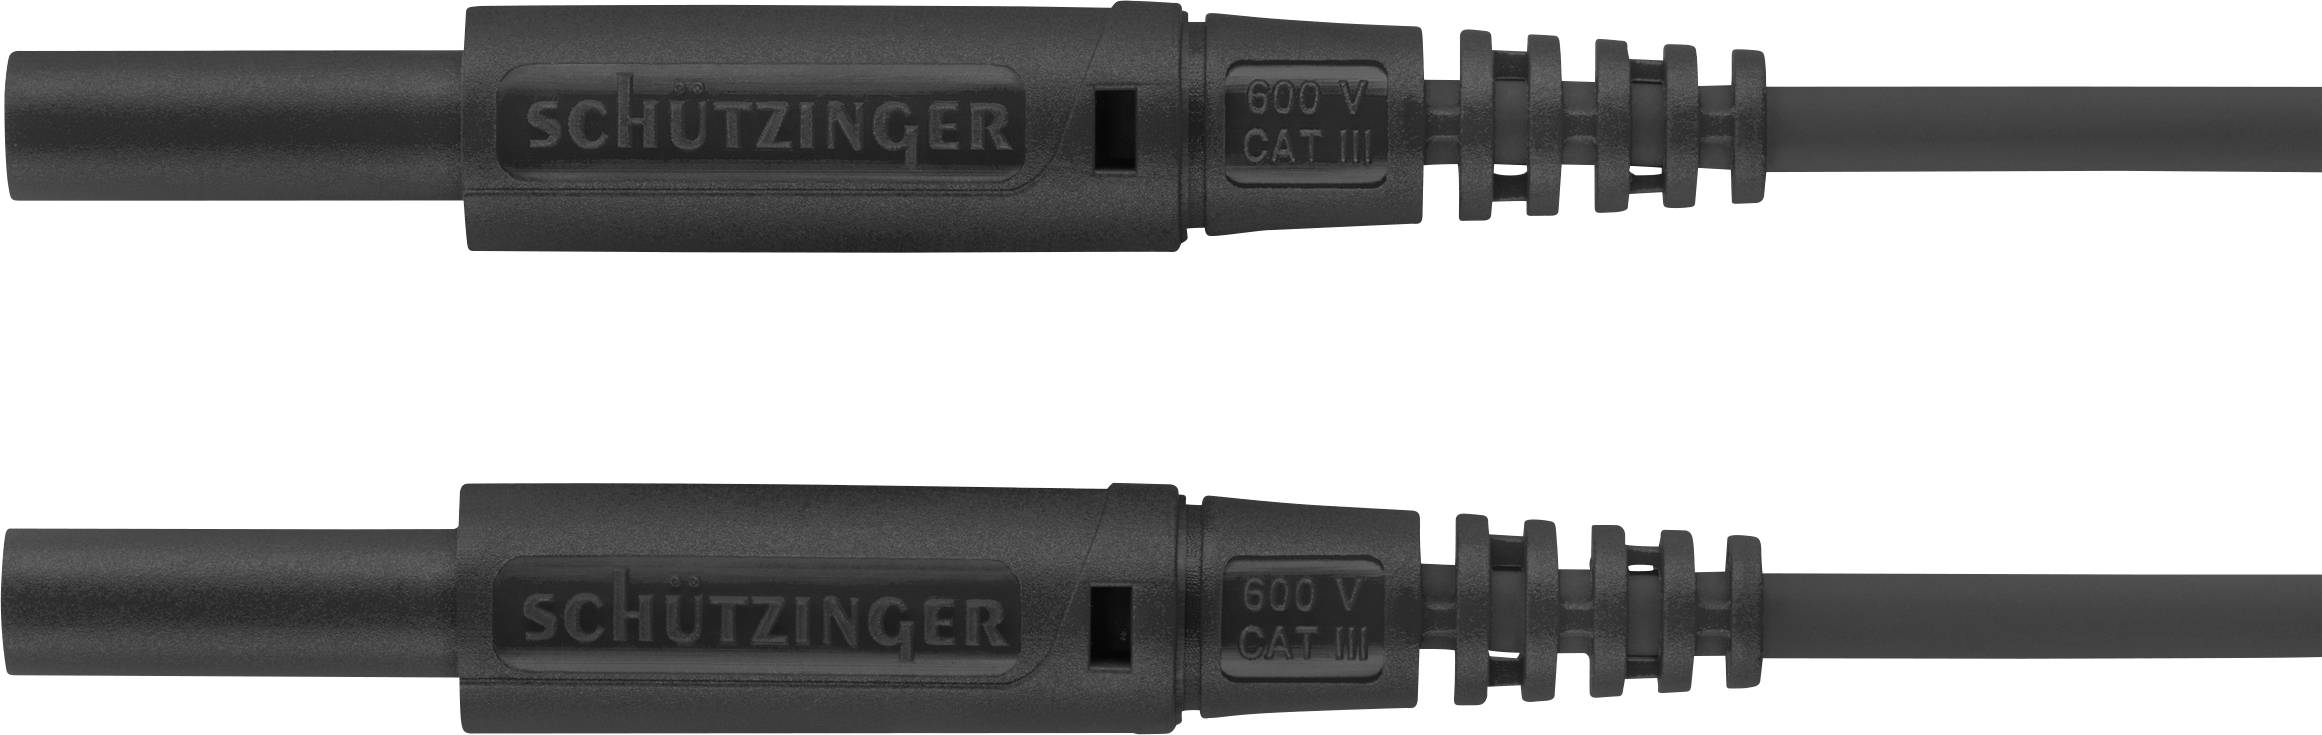 SCHÜTZINGER MSFK A301 / 0.5 / 100 / SW Messleitung [Stecker 2 mm - Stecker 2 mm] 100.00 cm Schw